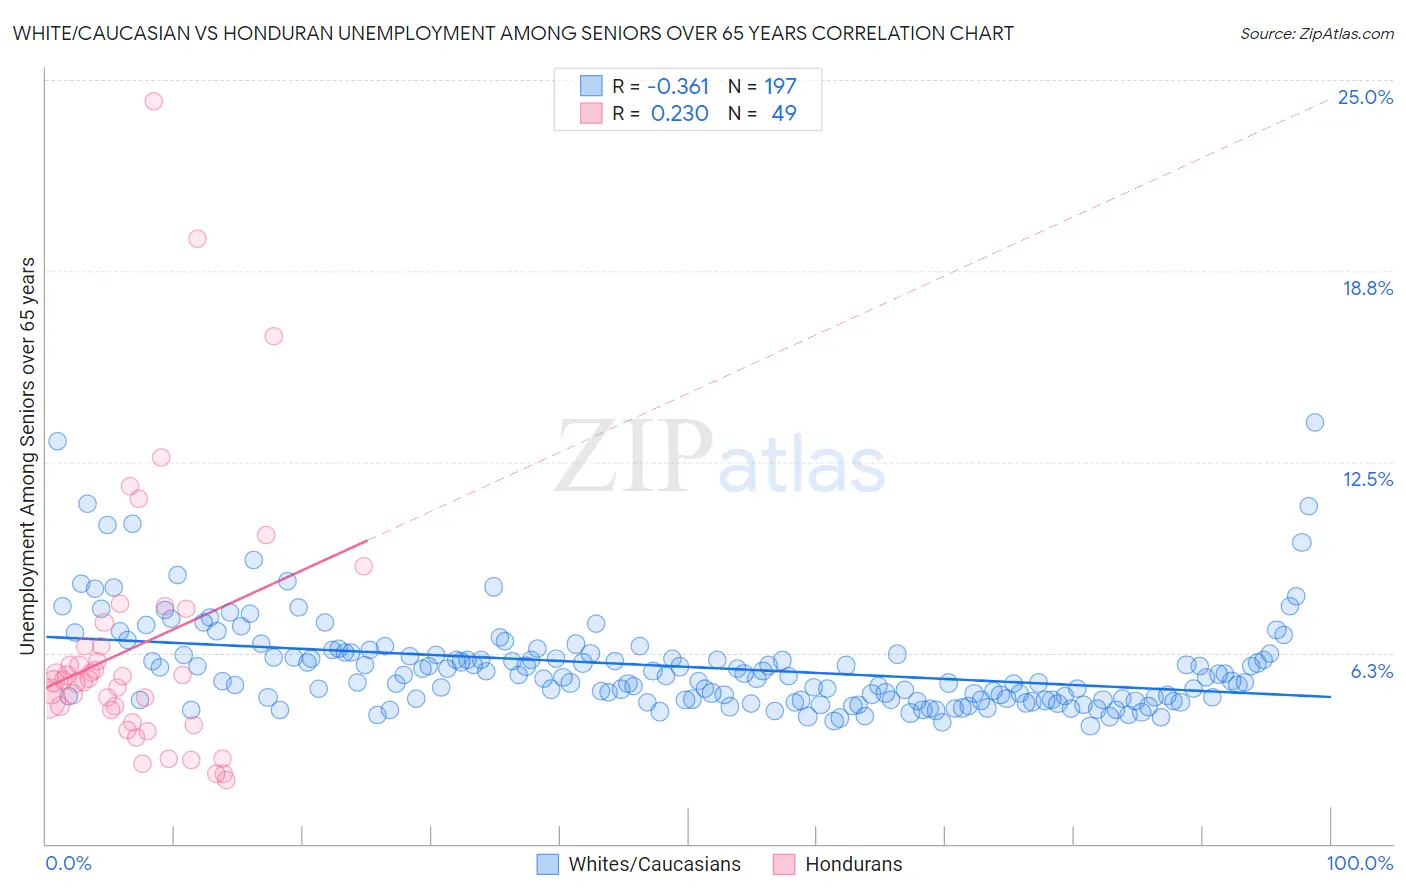 White/Caucasian vs Honduran Unemployment Among Seniors over 65 years